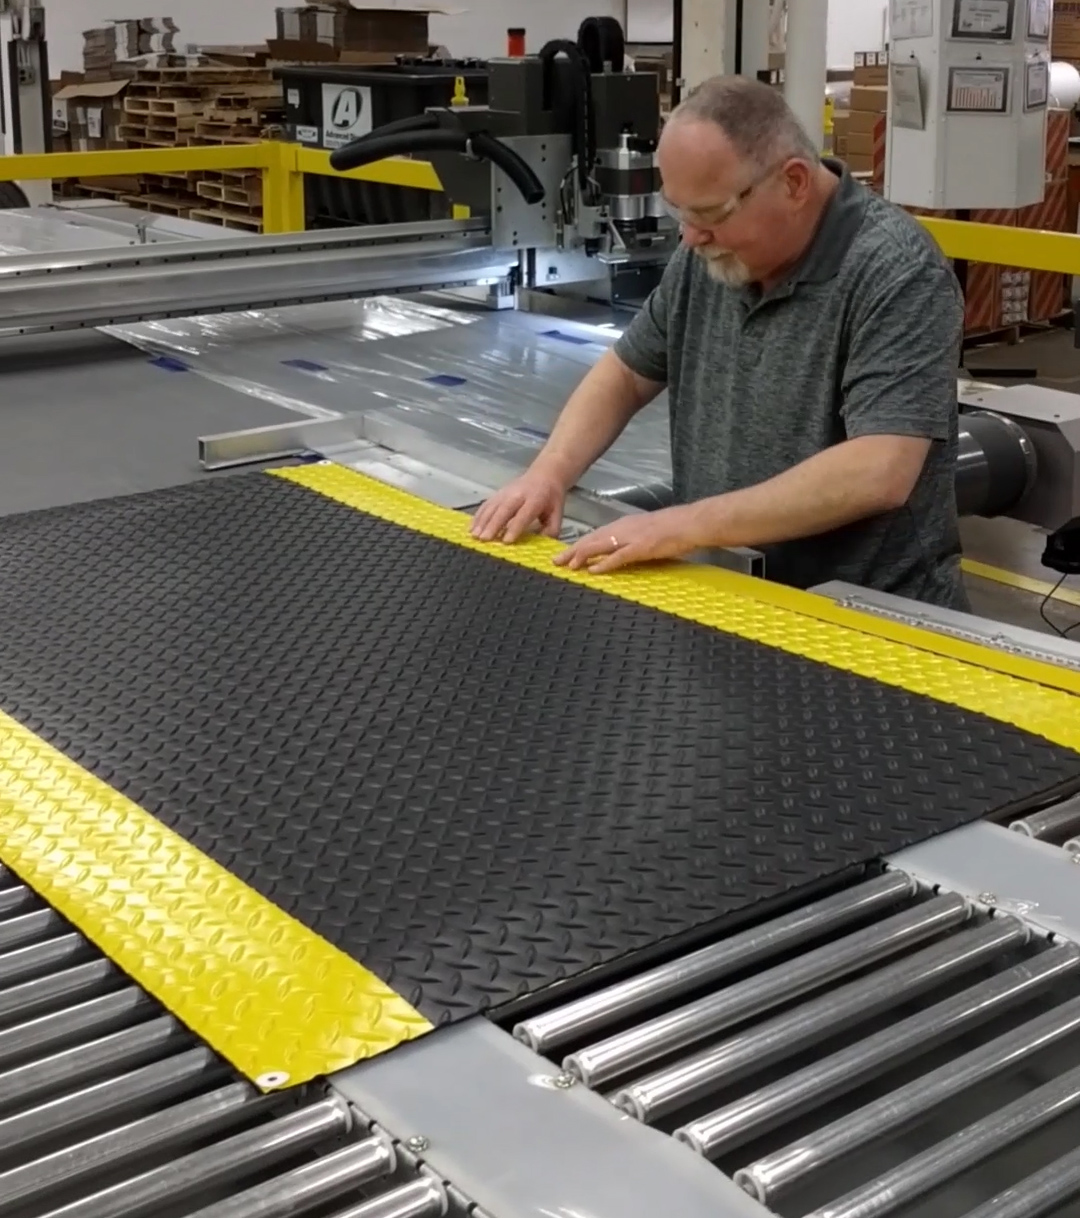 Gene is using a laser cutter to make a mat